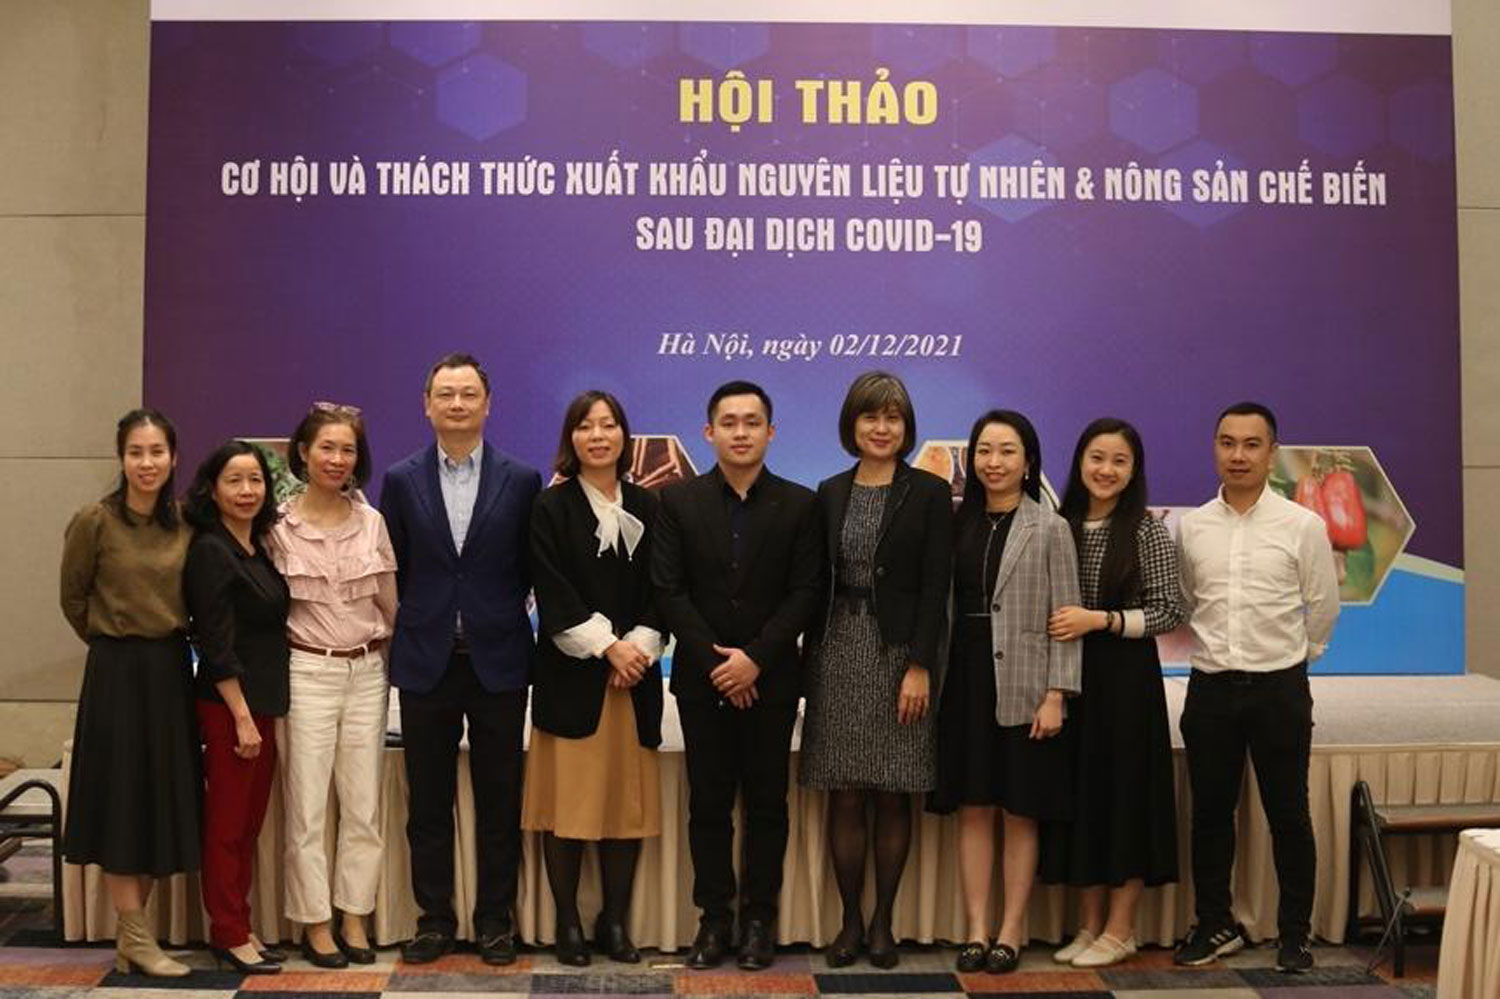 Hội thảo “Thách thức và cơ hội hậu Covid-19 cho các doanh nghiệp vừa và nhỏ Việt Nam trong lĩnh vực nguyên liệu tự nhiên và nông sản chế biến”